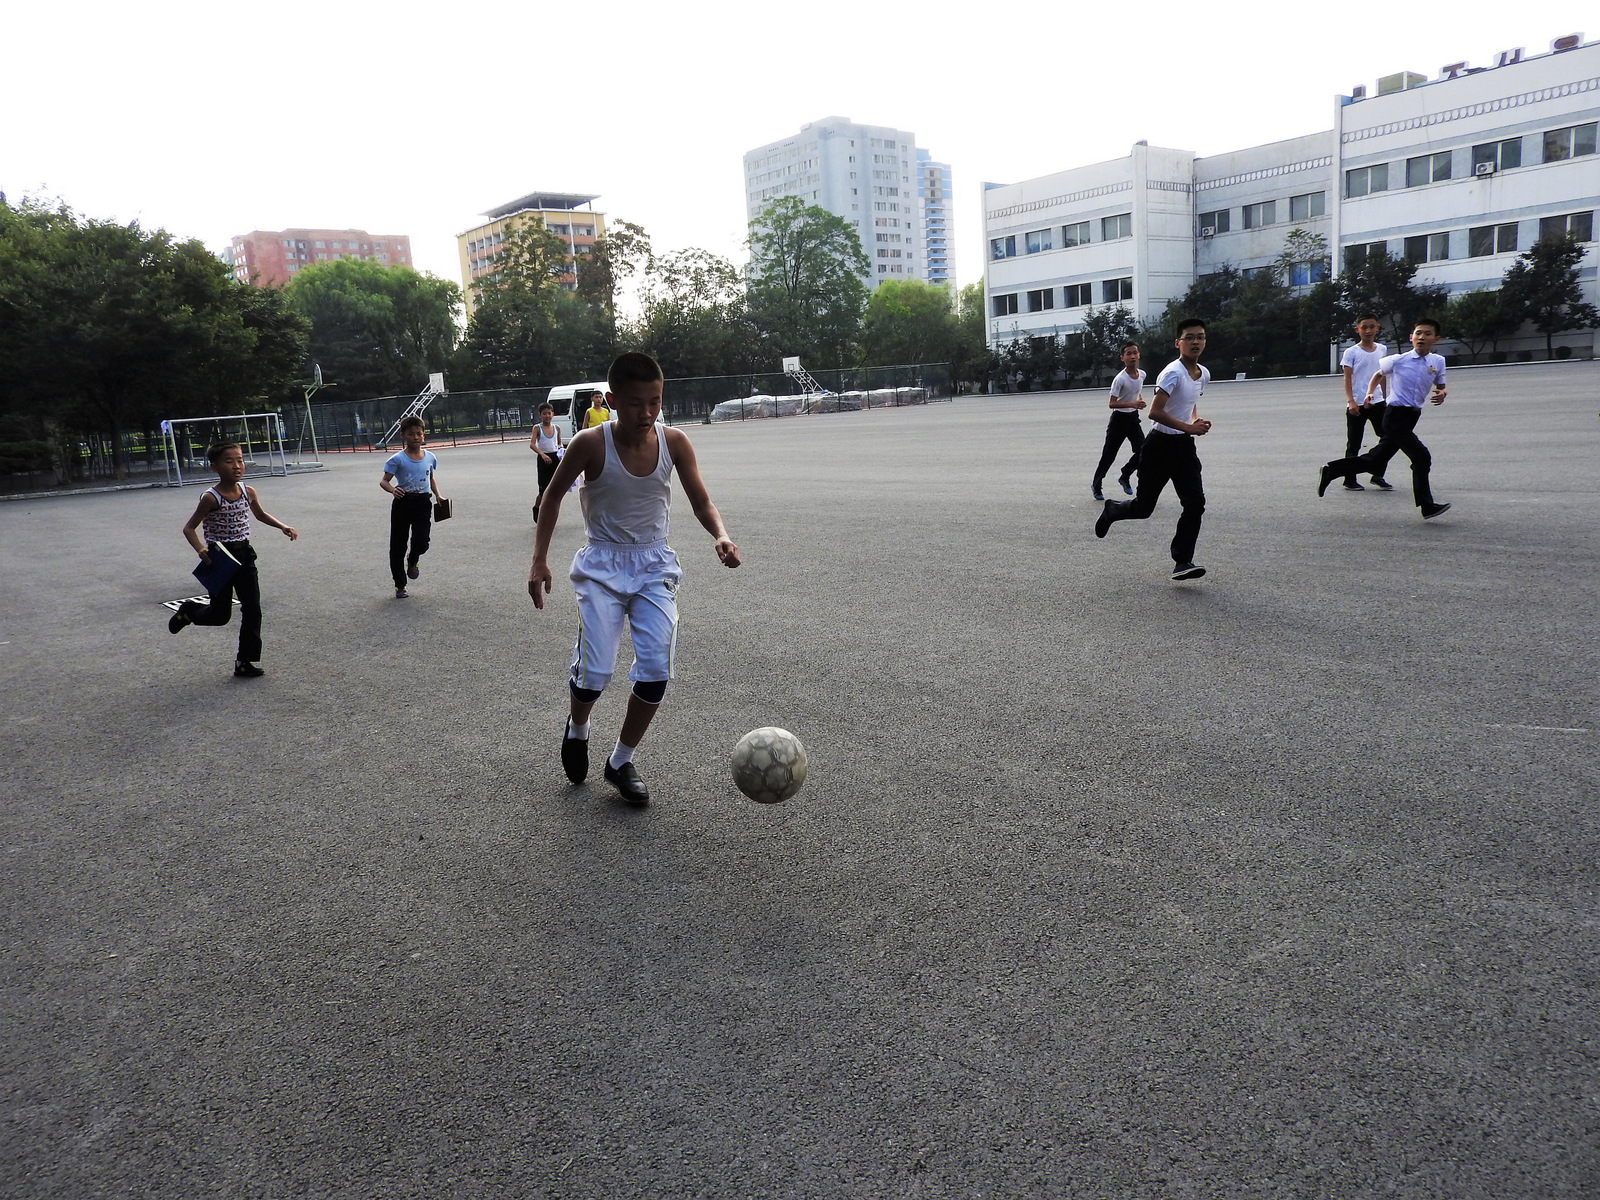 Alumnos jugando al fútbol fuera de la escuela media. Mira el clip aqui